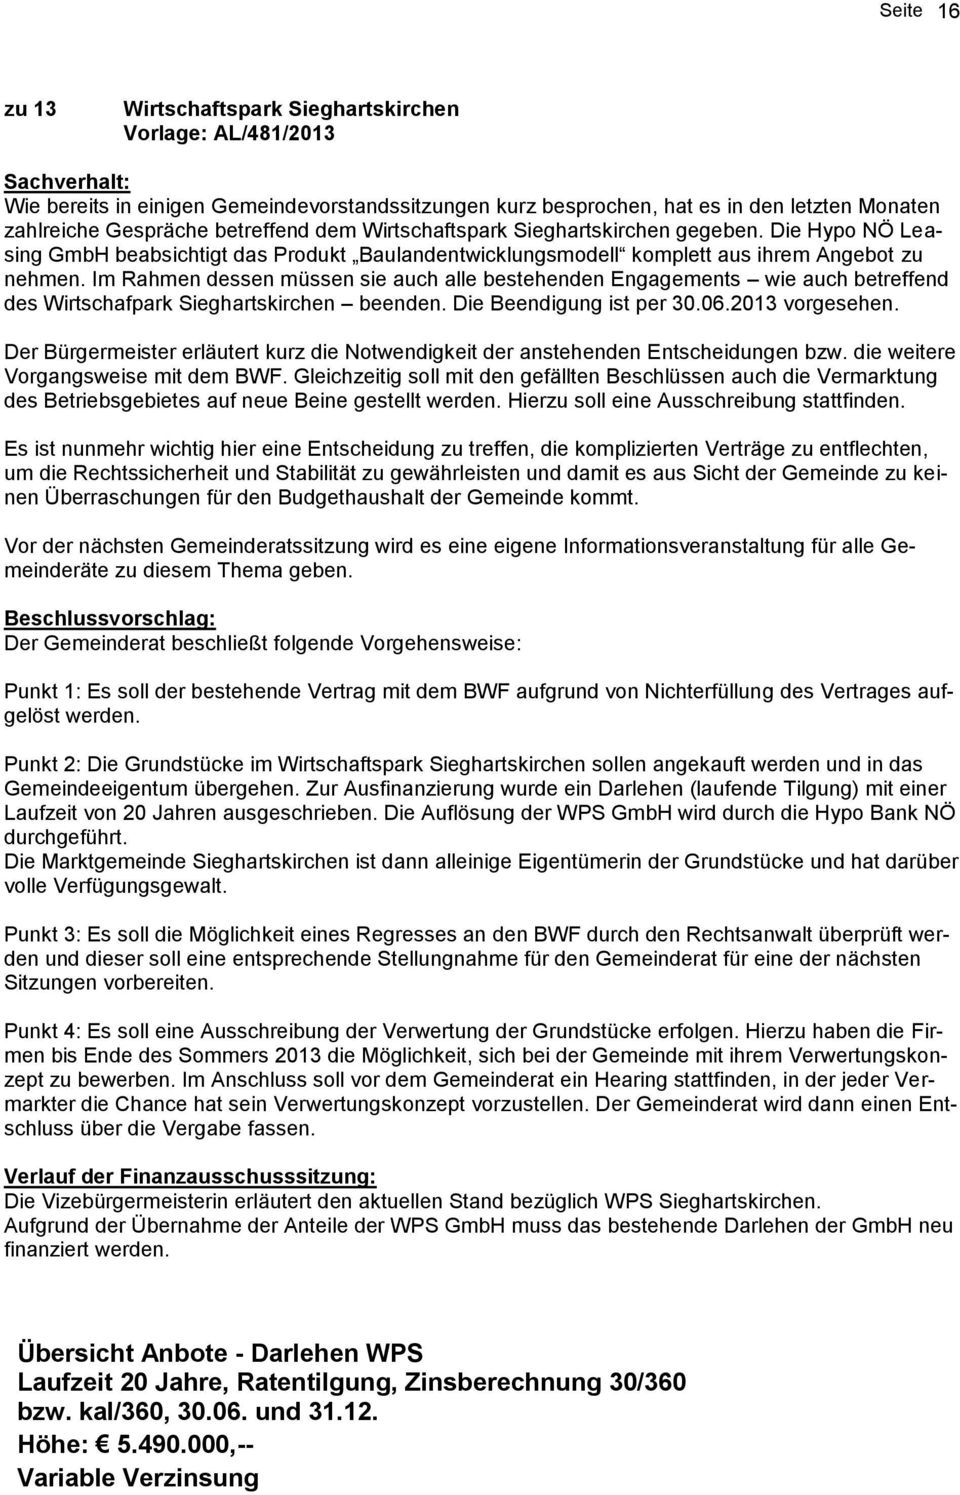 Im Rahmen dessen müssen sie auch alle bestehenden Engagements wie auch betreffend des Wirtschafpark Sieghartskirchen beenden. Die Beendigung ist per 30.06.2013 vorgesehen.